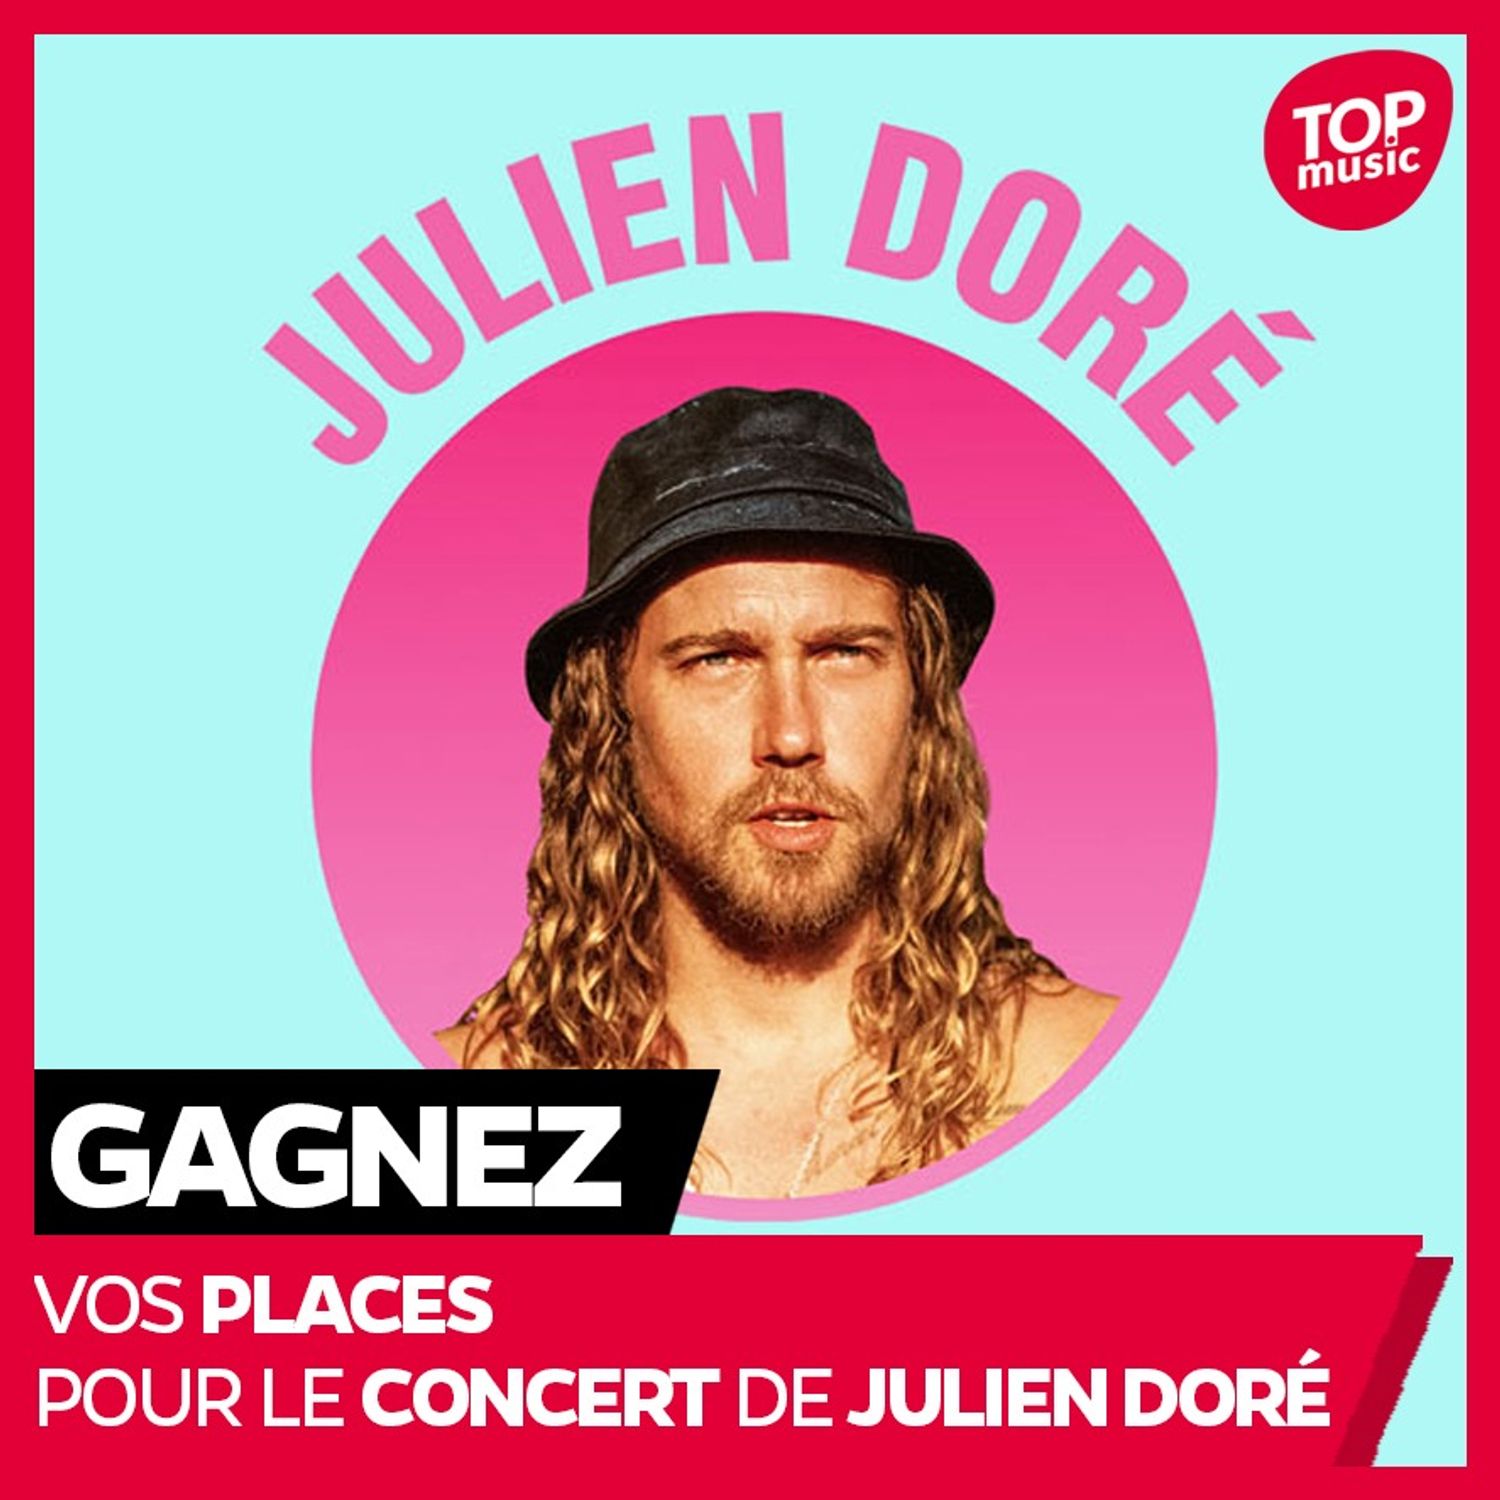 Gagnez vos places pour le concert de Julien Doré !